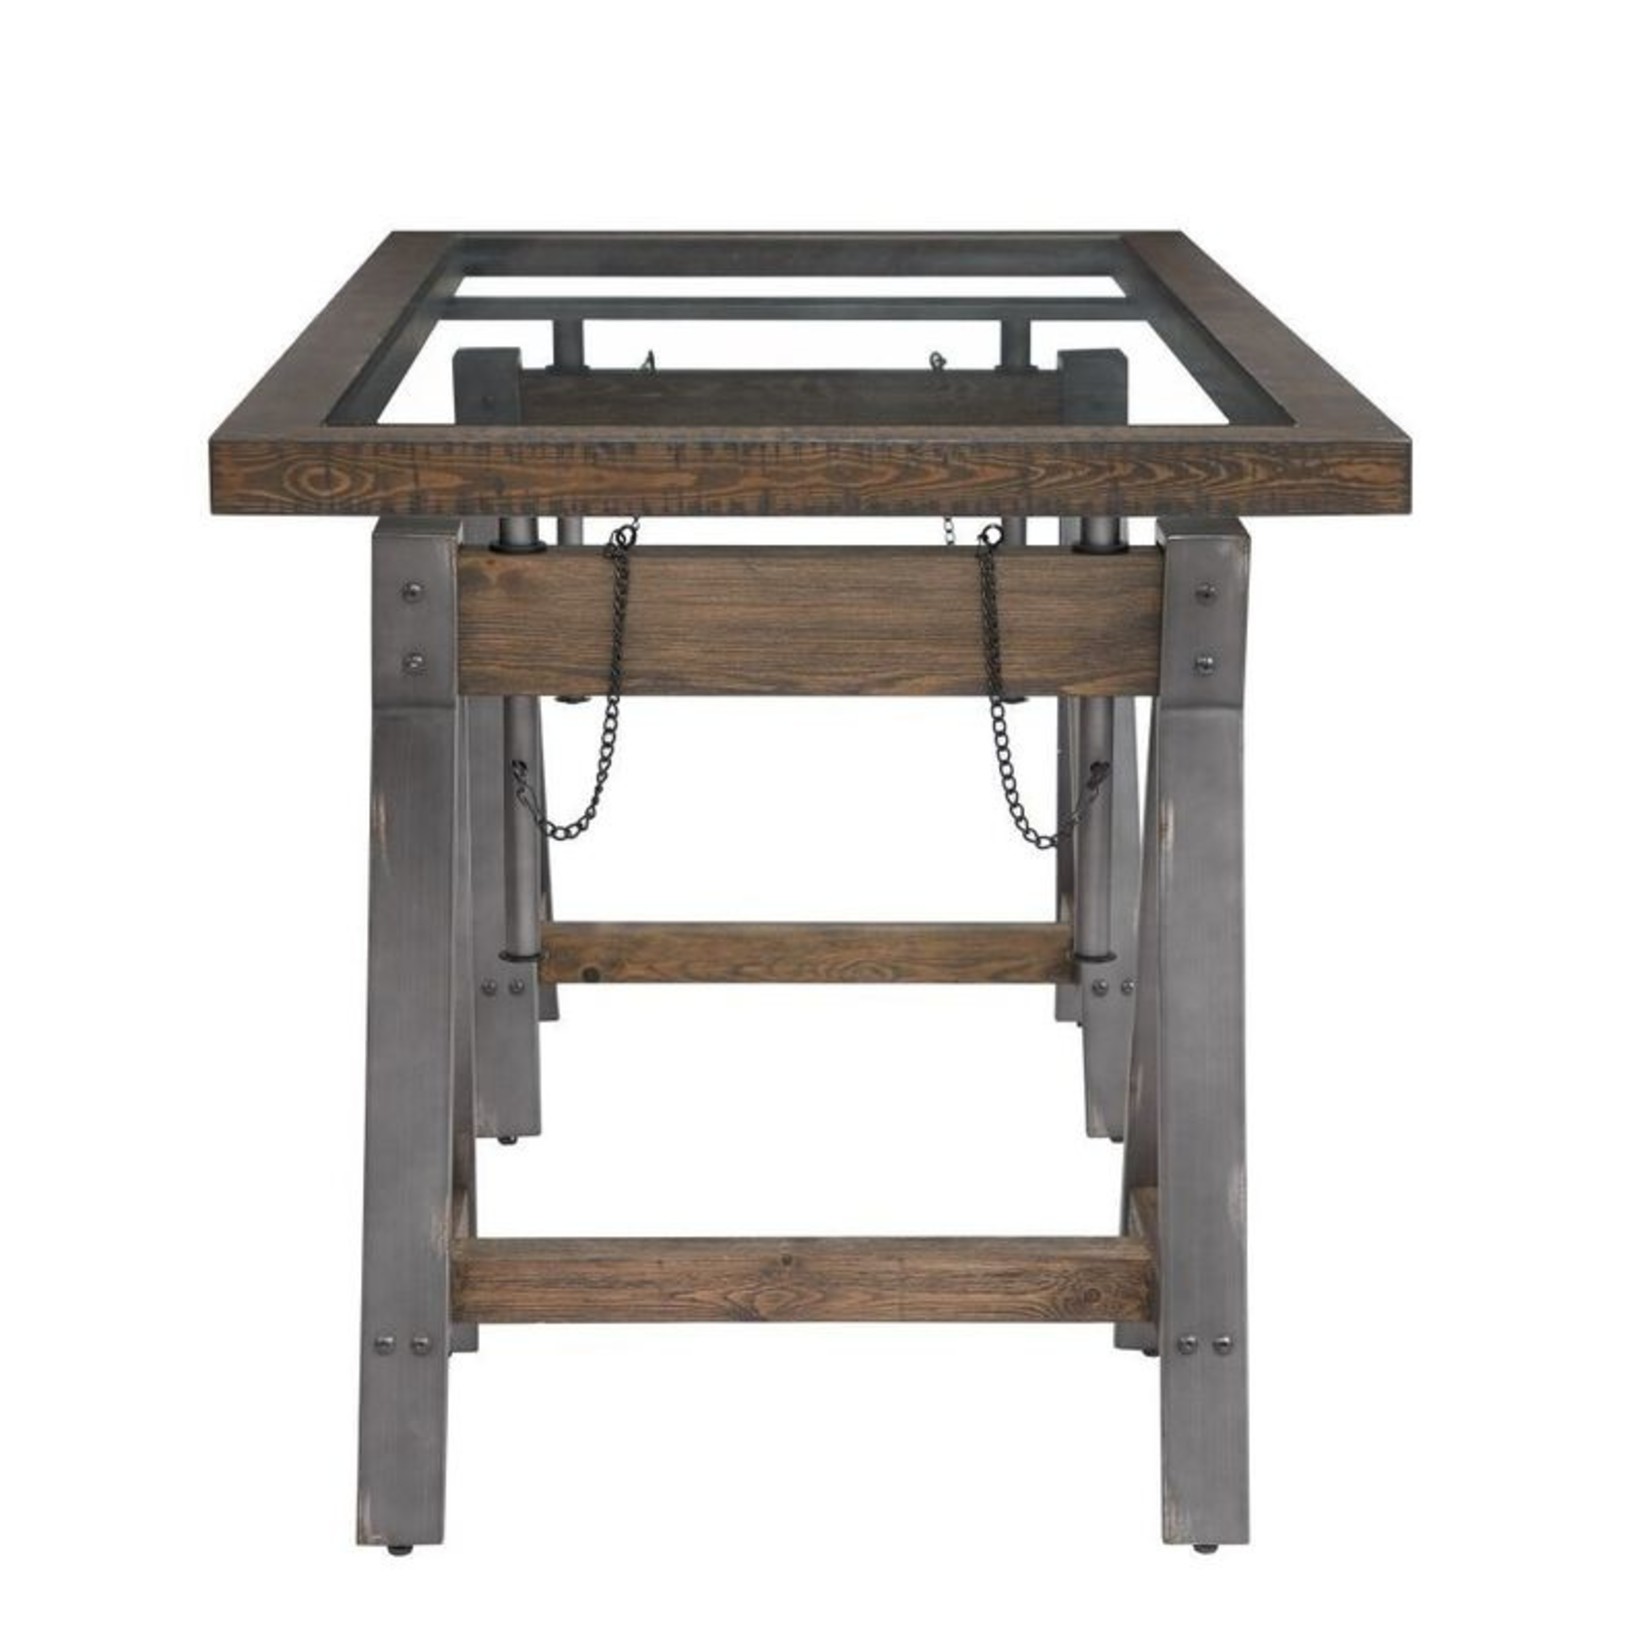 Mickler & Co. Mence Adjustable Desk